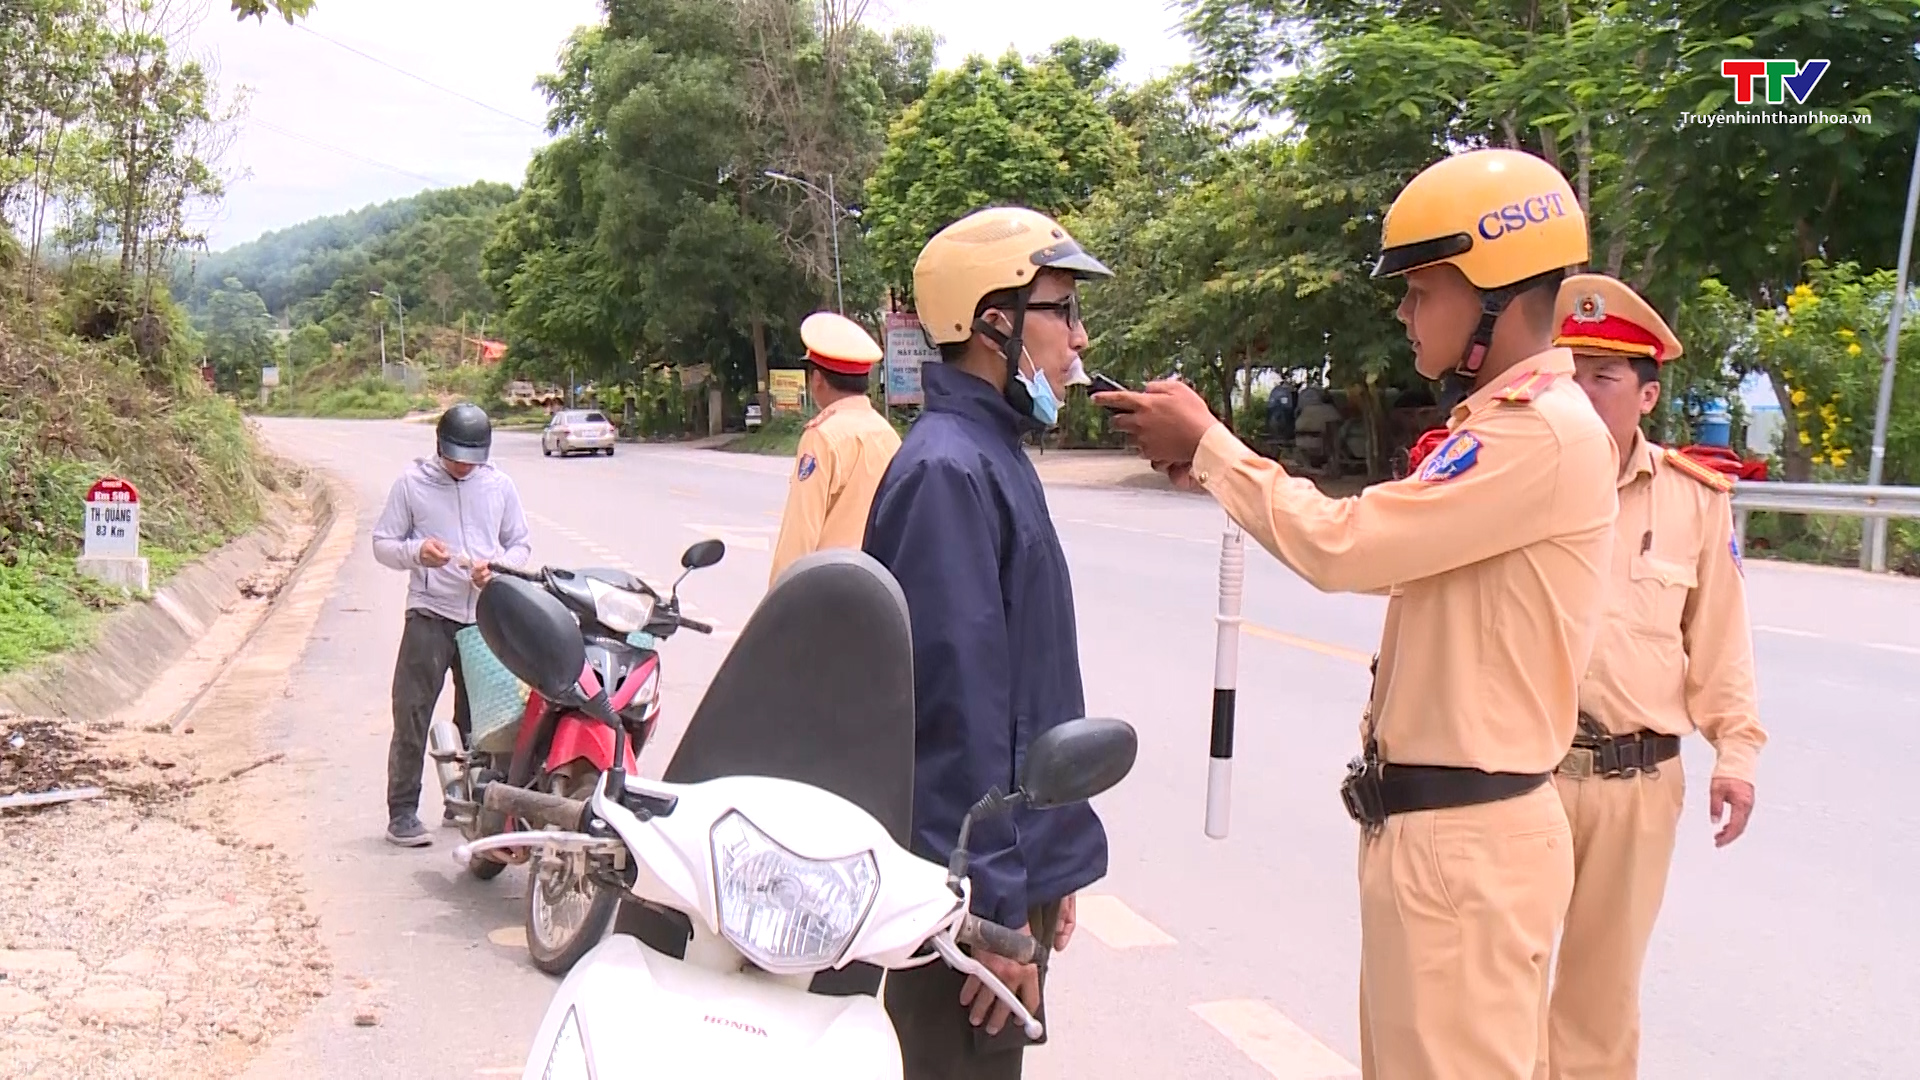 Công an huyện Như Xuân triển khai đồng bộ giải pháp kéo giảm tai nạn giao thông- Ảnh 3.